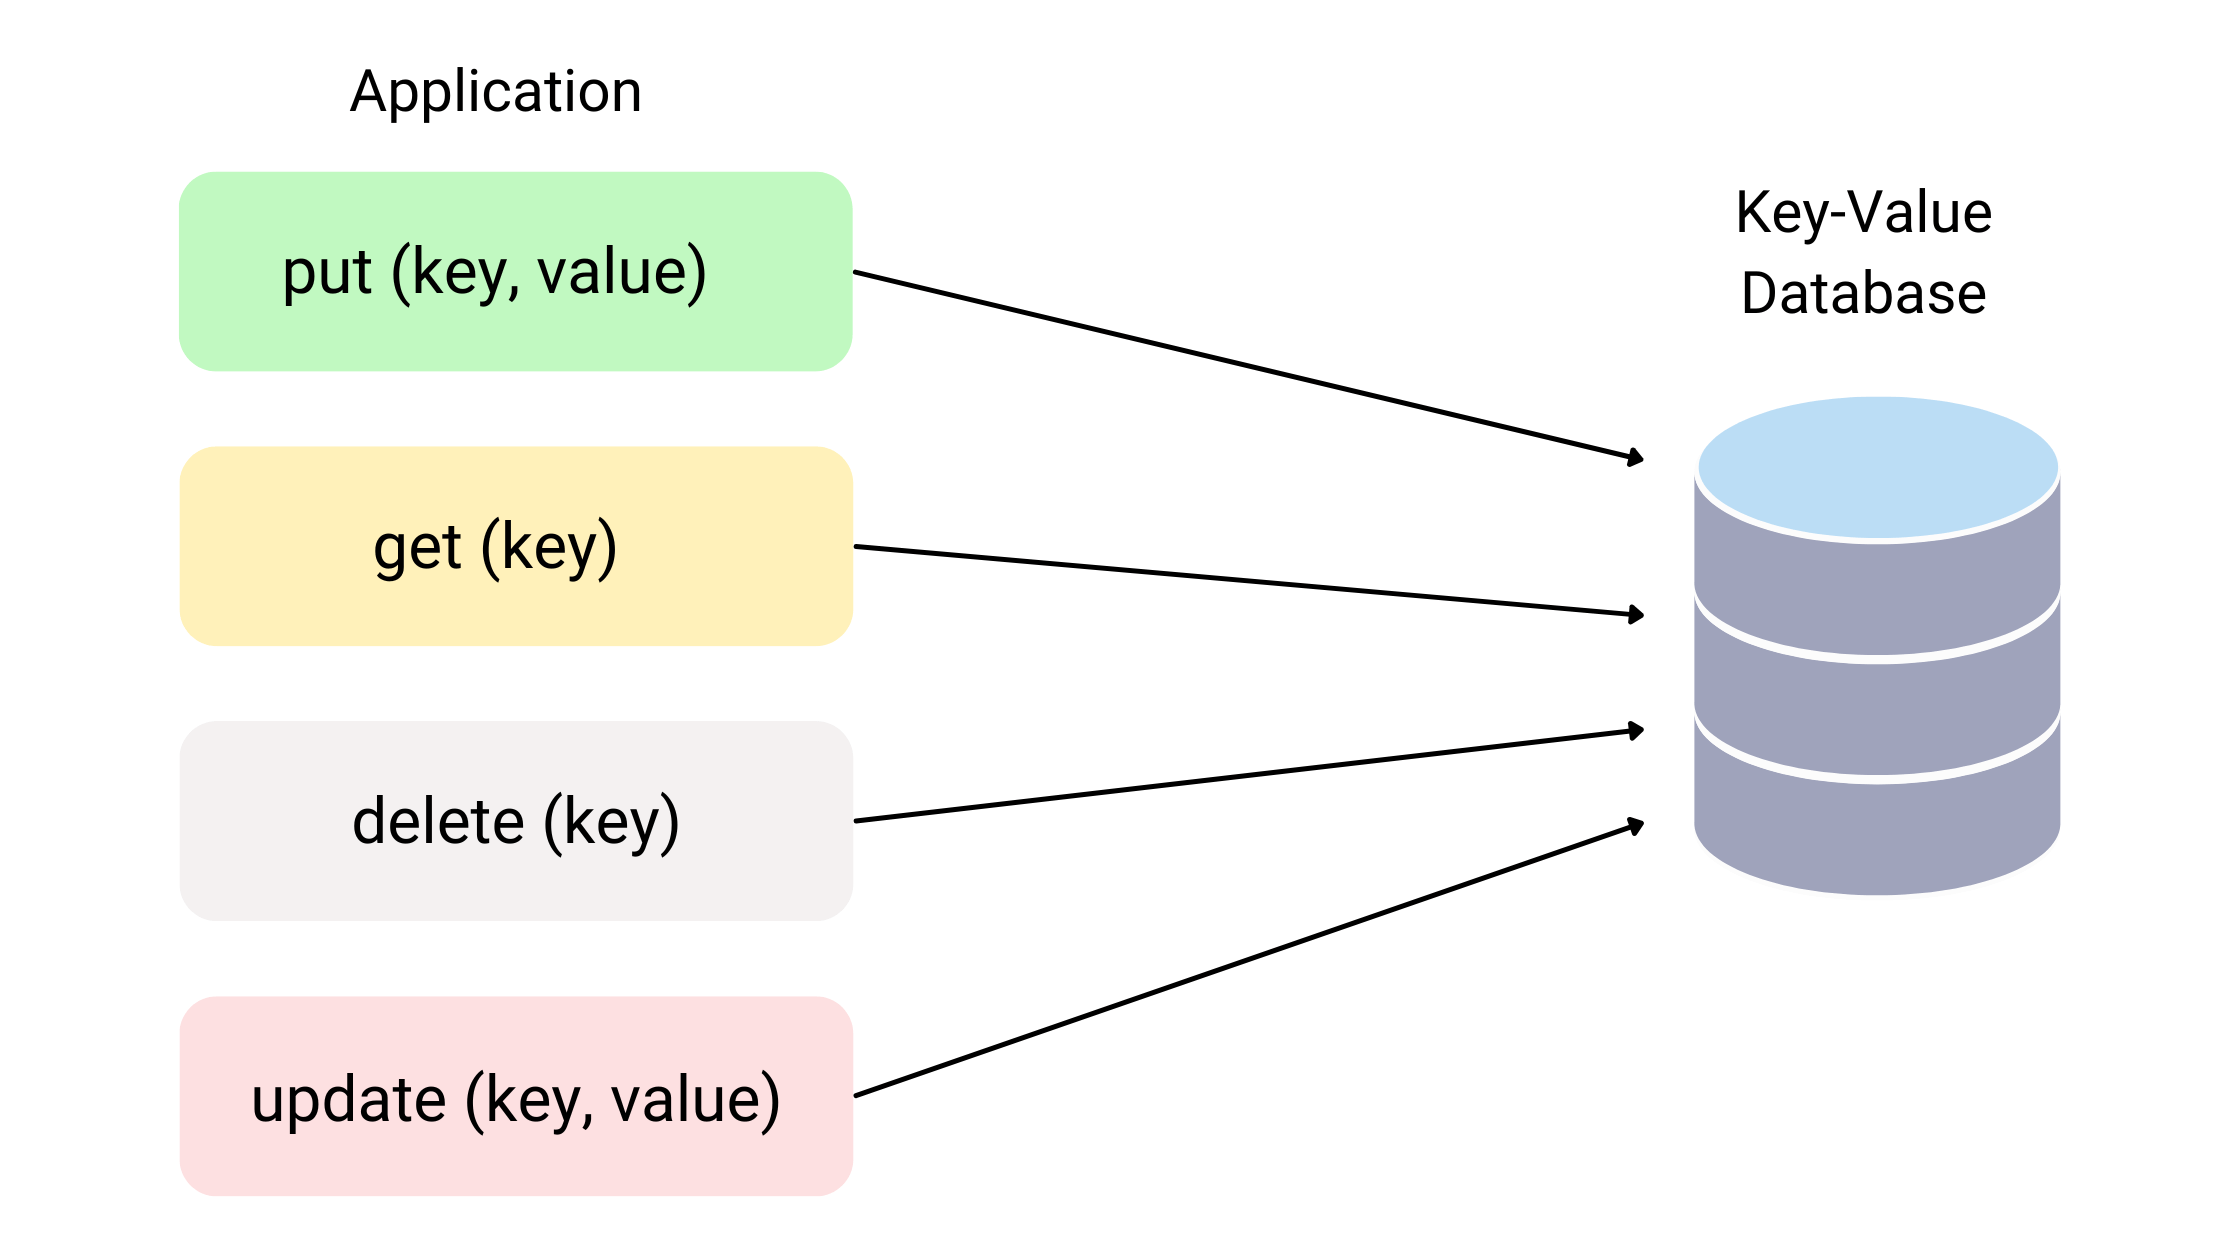 Key-value database operations